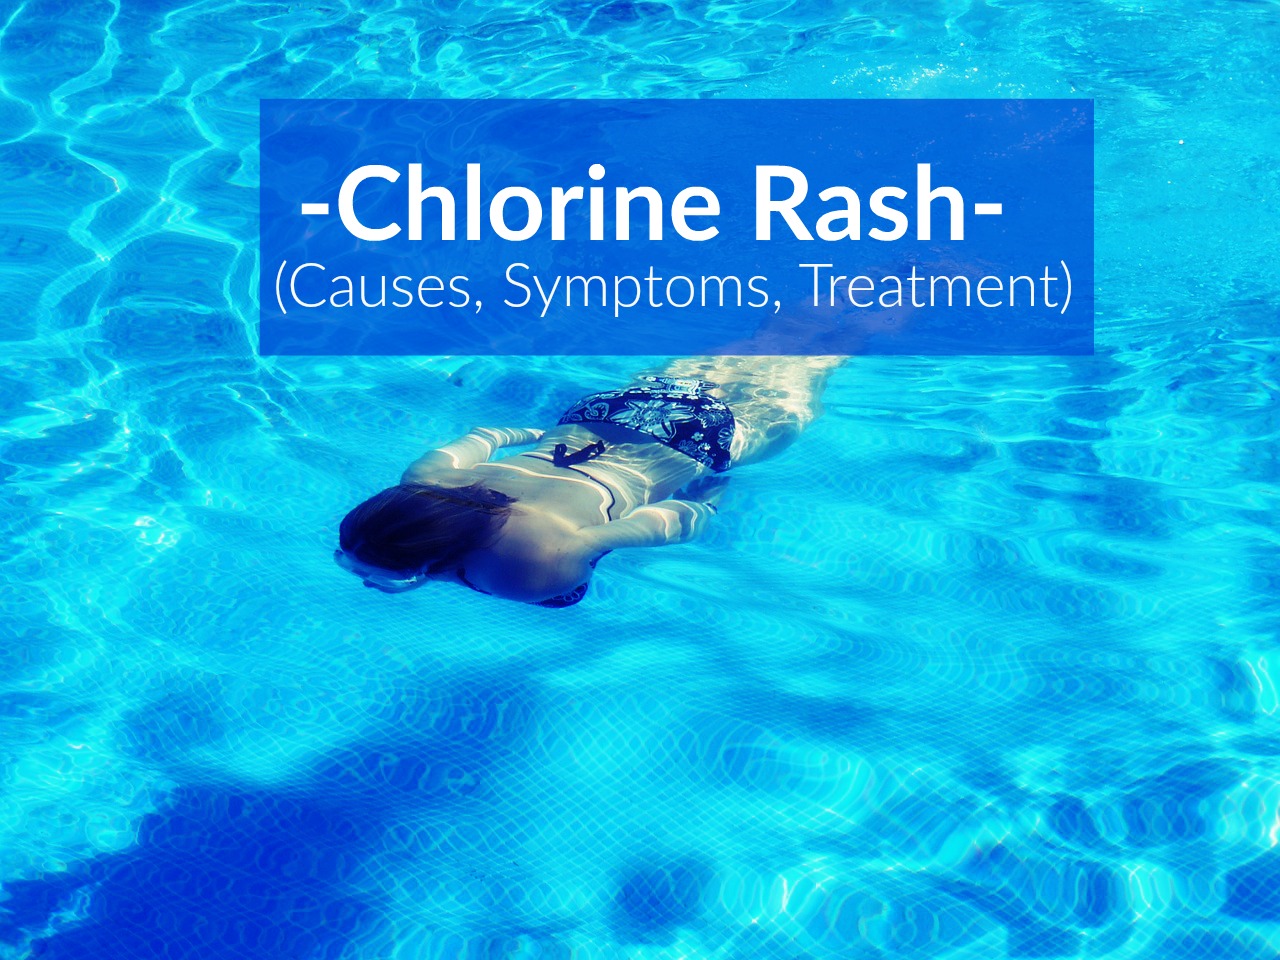 Chlorine Rash